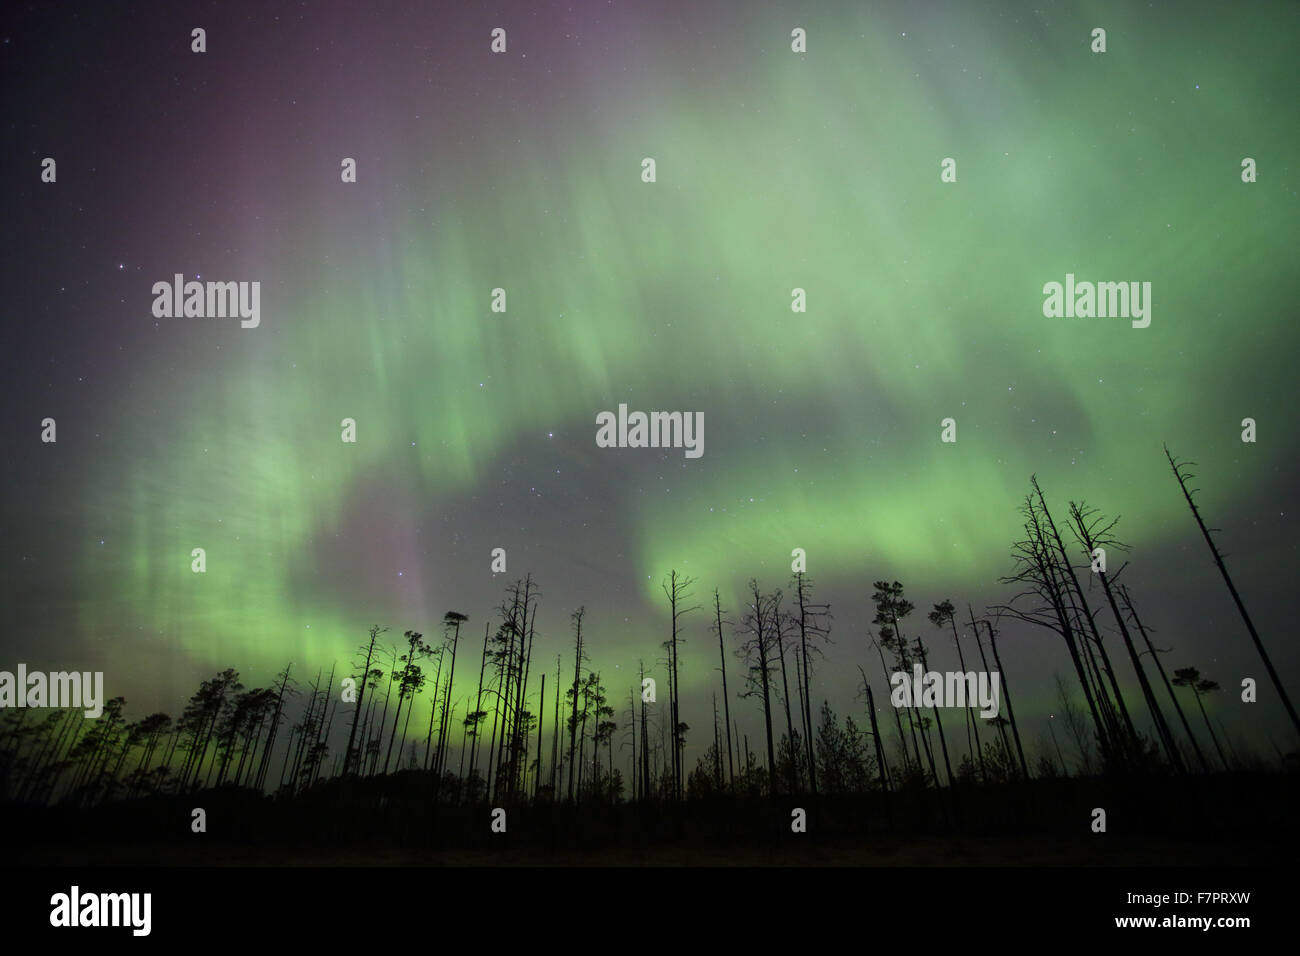 Luci del nord (Aurora Boreale nel cielo sopra il BOG. Alam-Pedja Riserva Naturale, Estonia, Europa Foto Stock